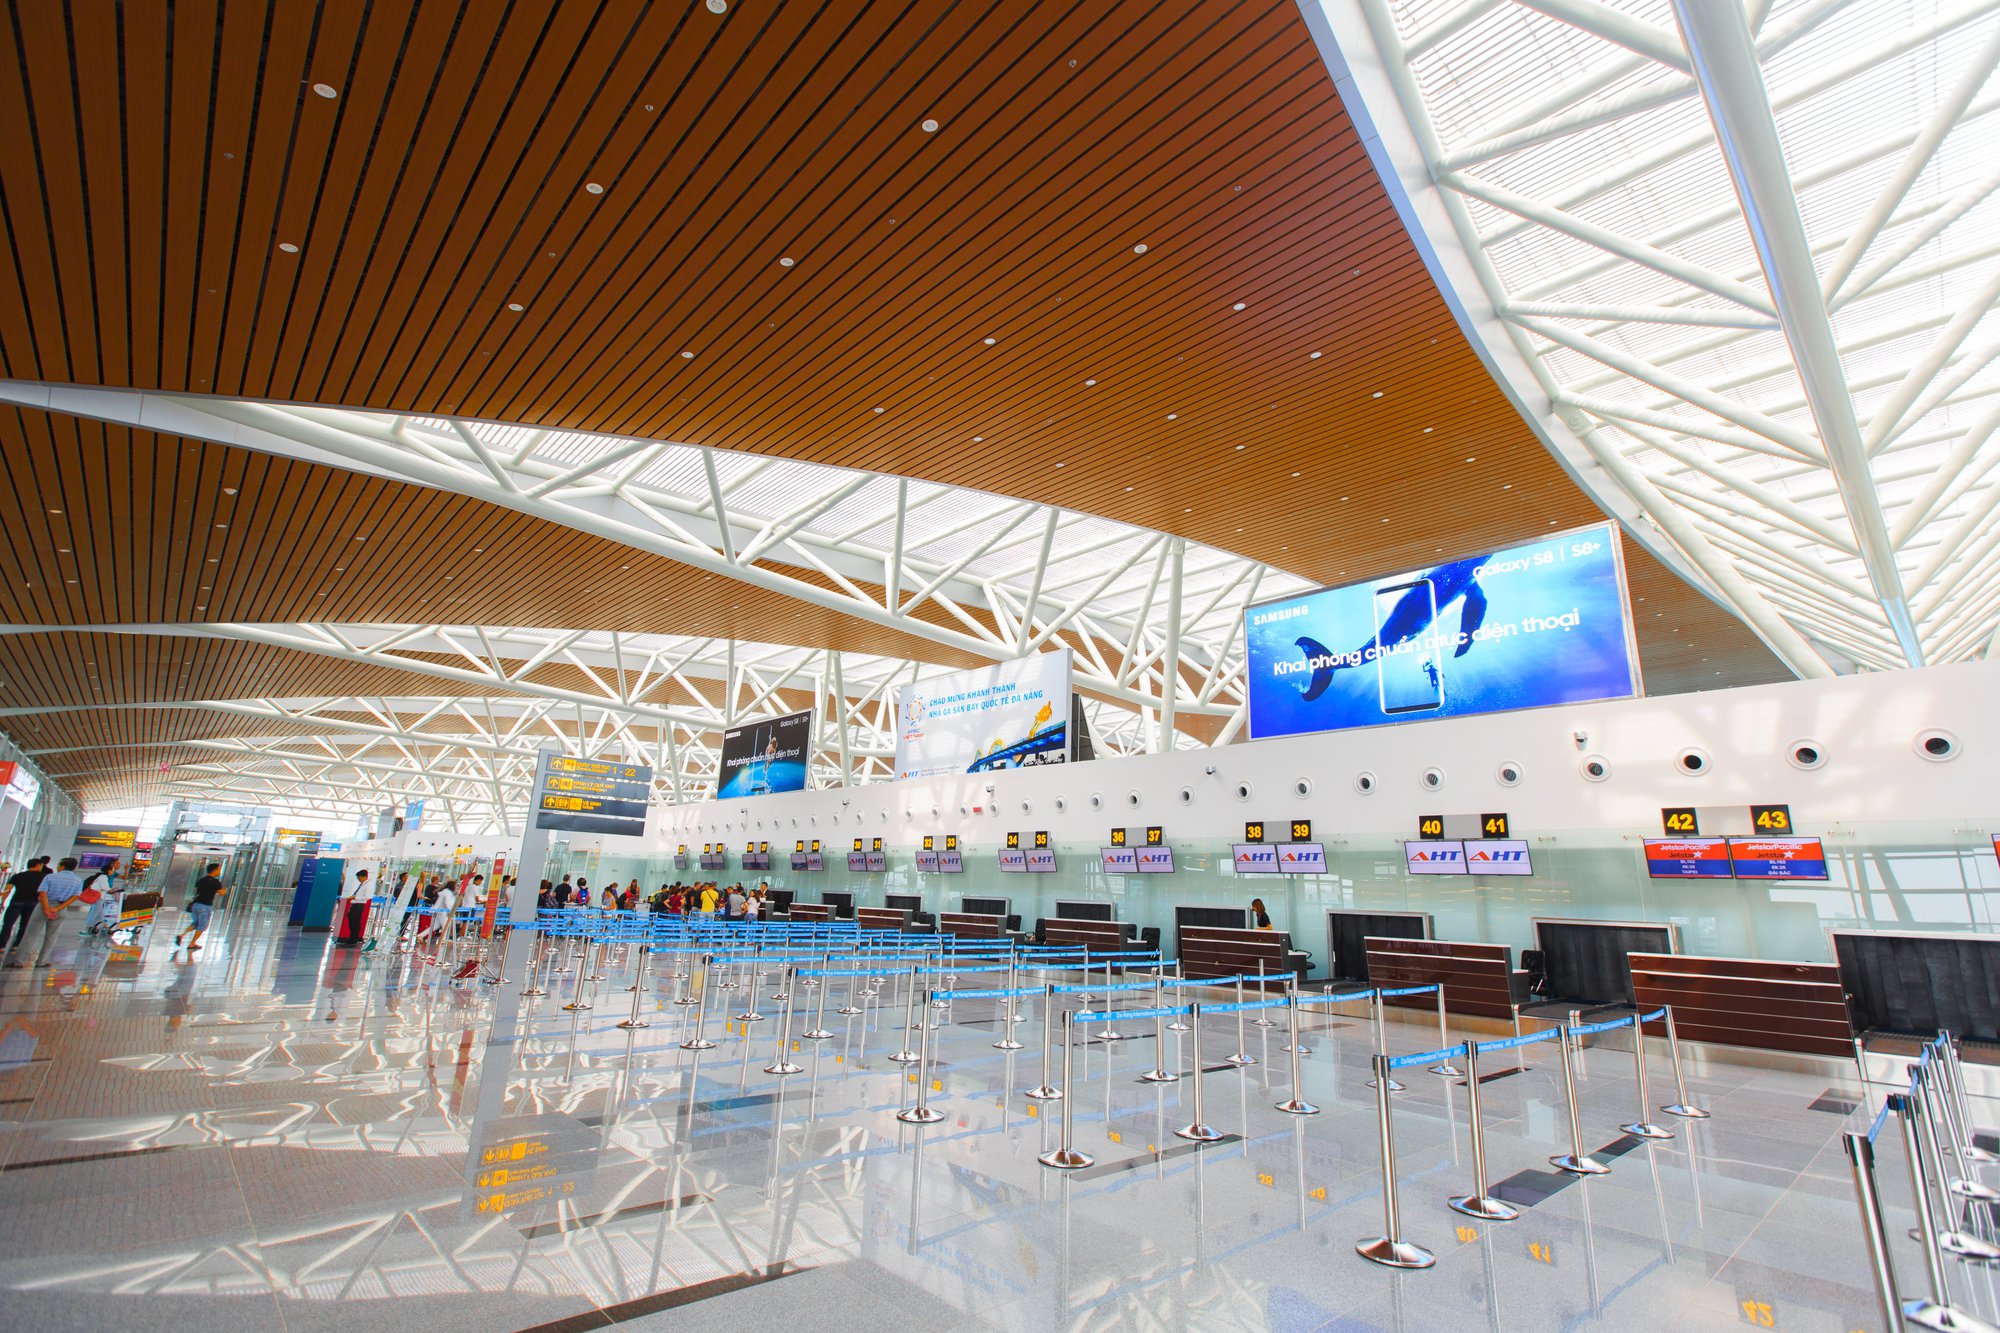 Sân bay Đà Nẵng được vinh danh là Sân bay cải tiến nhất thế giới và Sân bay khu vực tốt nhất châu Á - Ảnh 4.